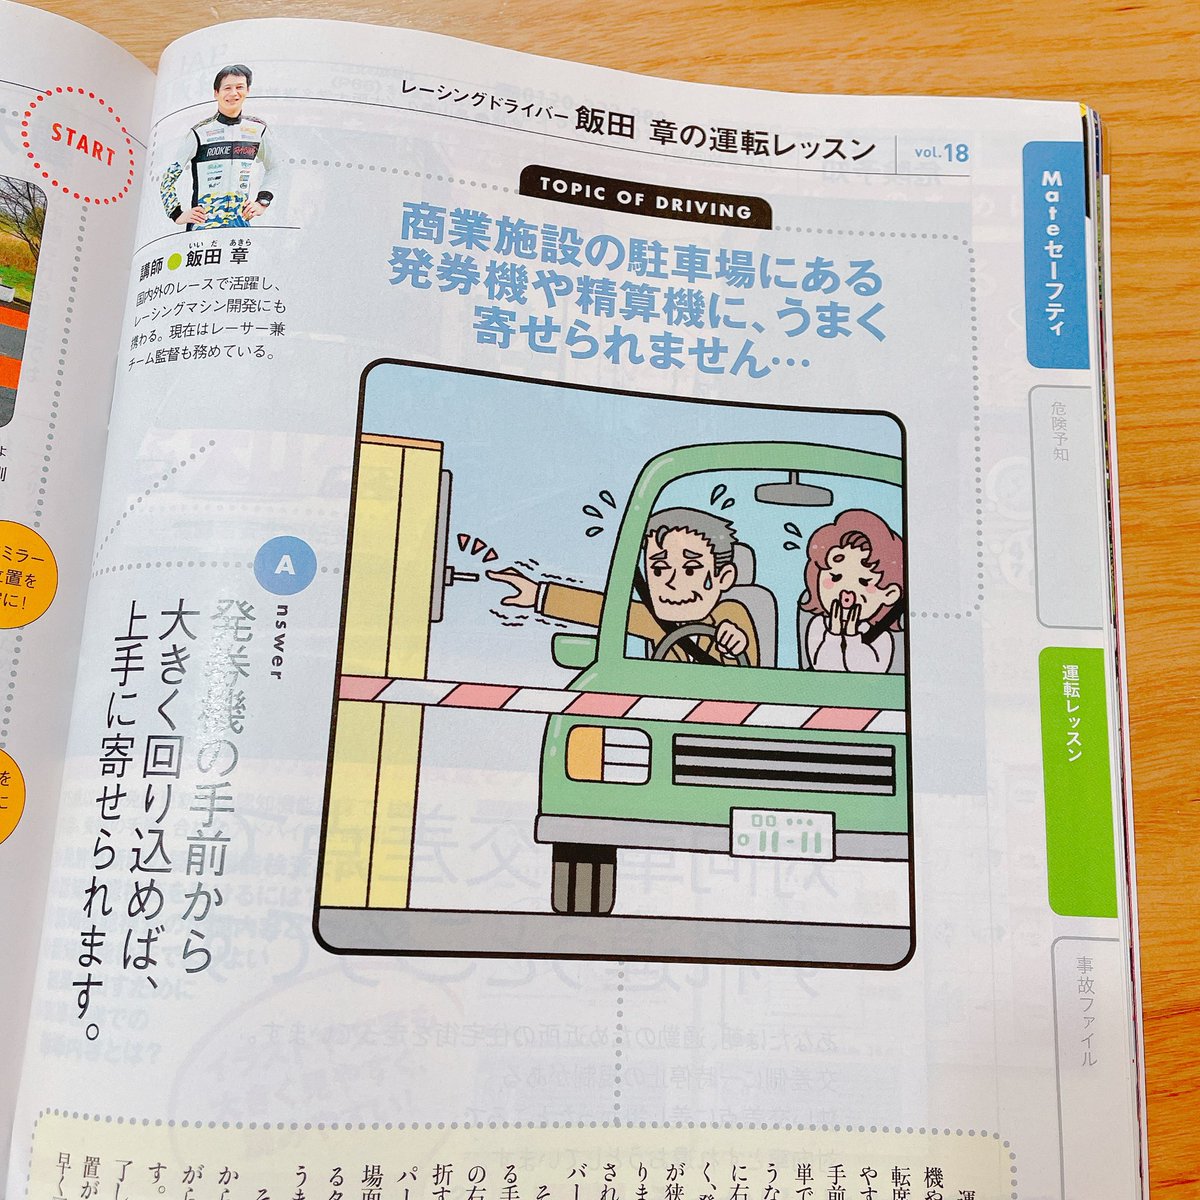 『JAF Mate』さん2.3月合併号、4月号の『飯田章の運転レッスン』コーナーの挿絵を描かせていただきました!寂しいですが今回で最終回です。約2年勉強になりながらとても楽しく描かせていただきました? 